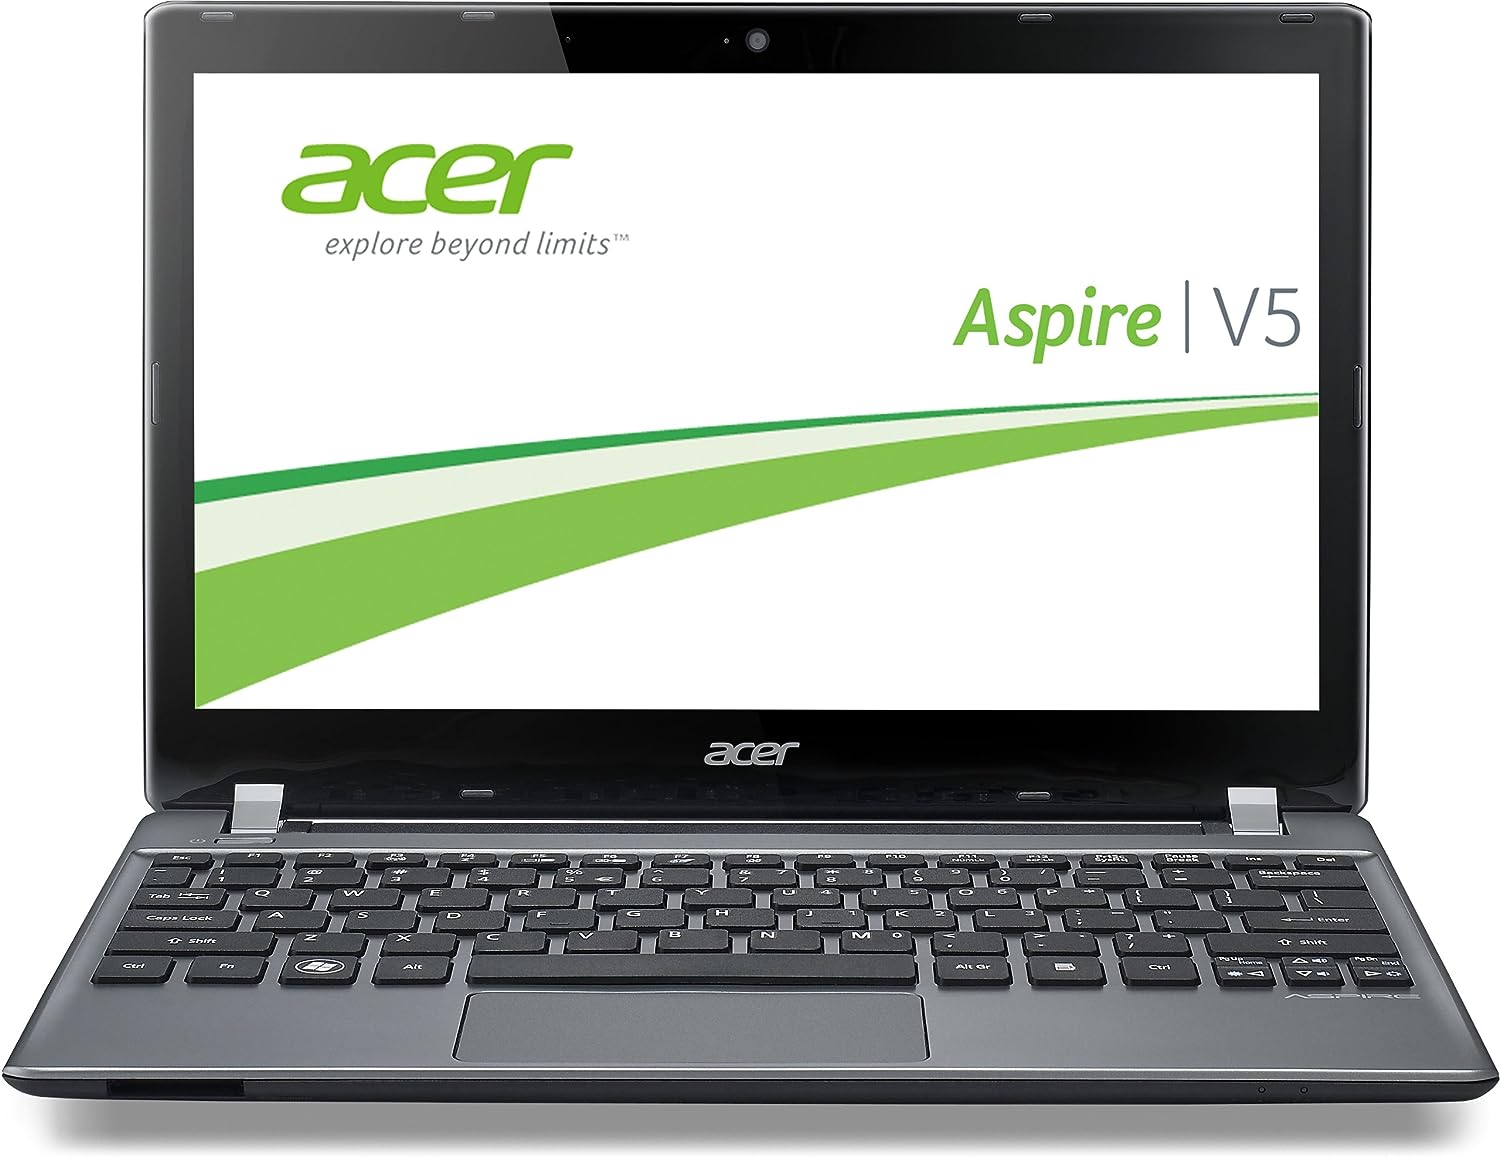 Acer Aspire V5-452 Notebook